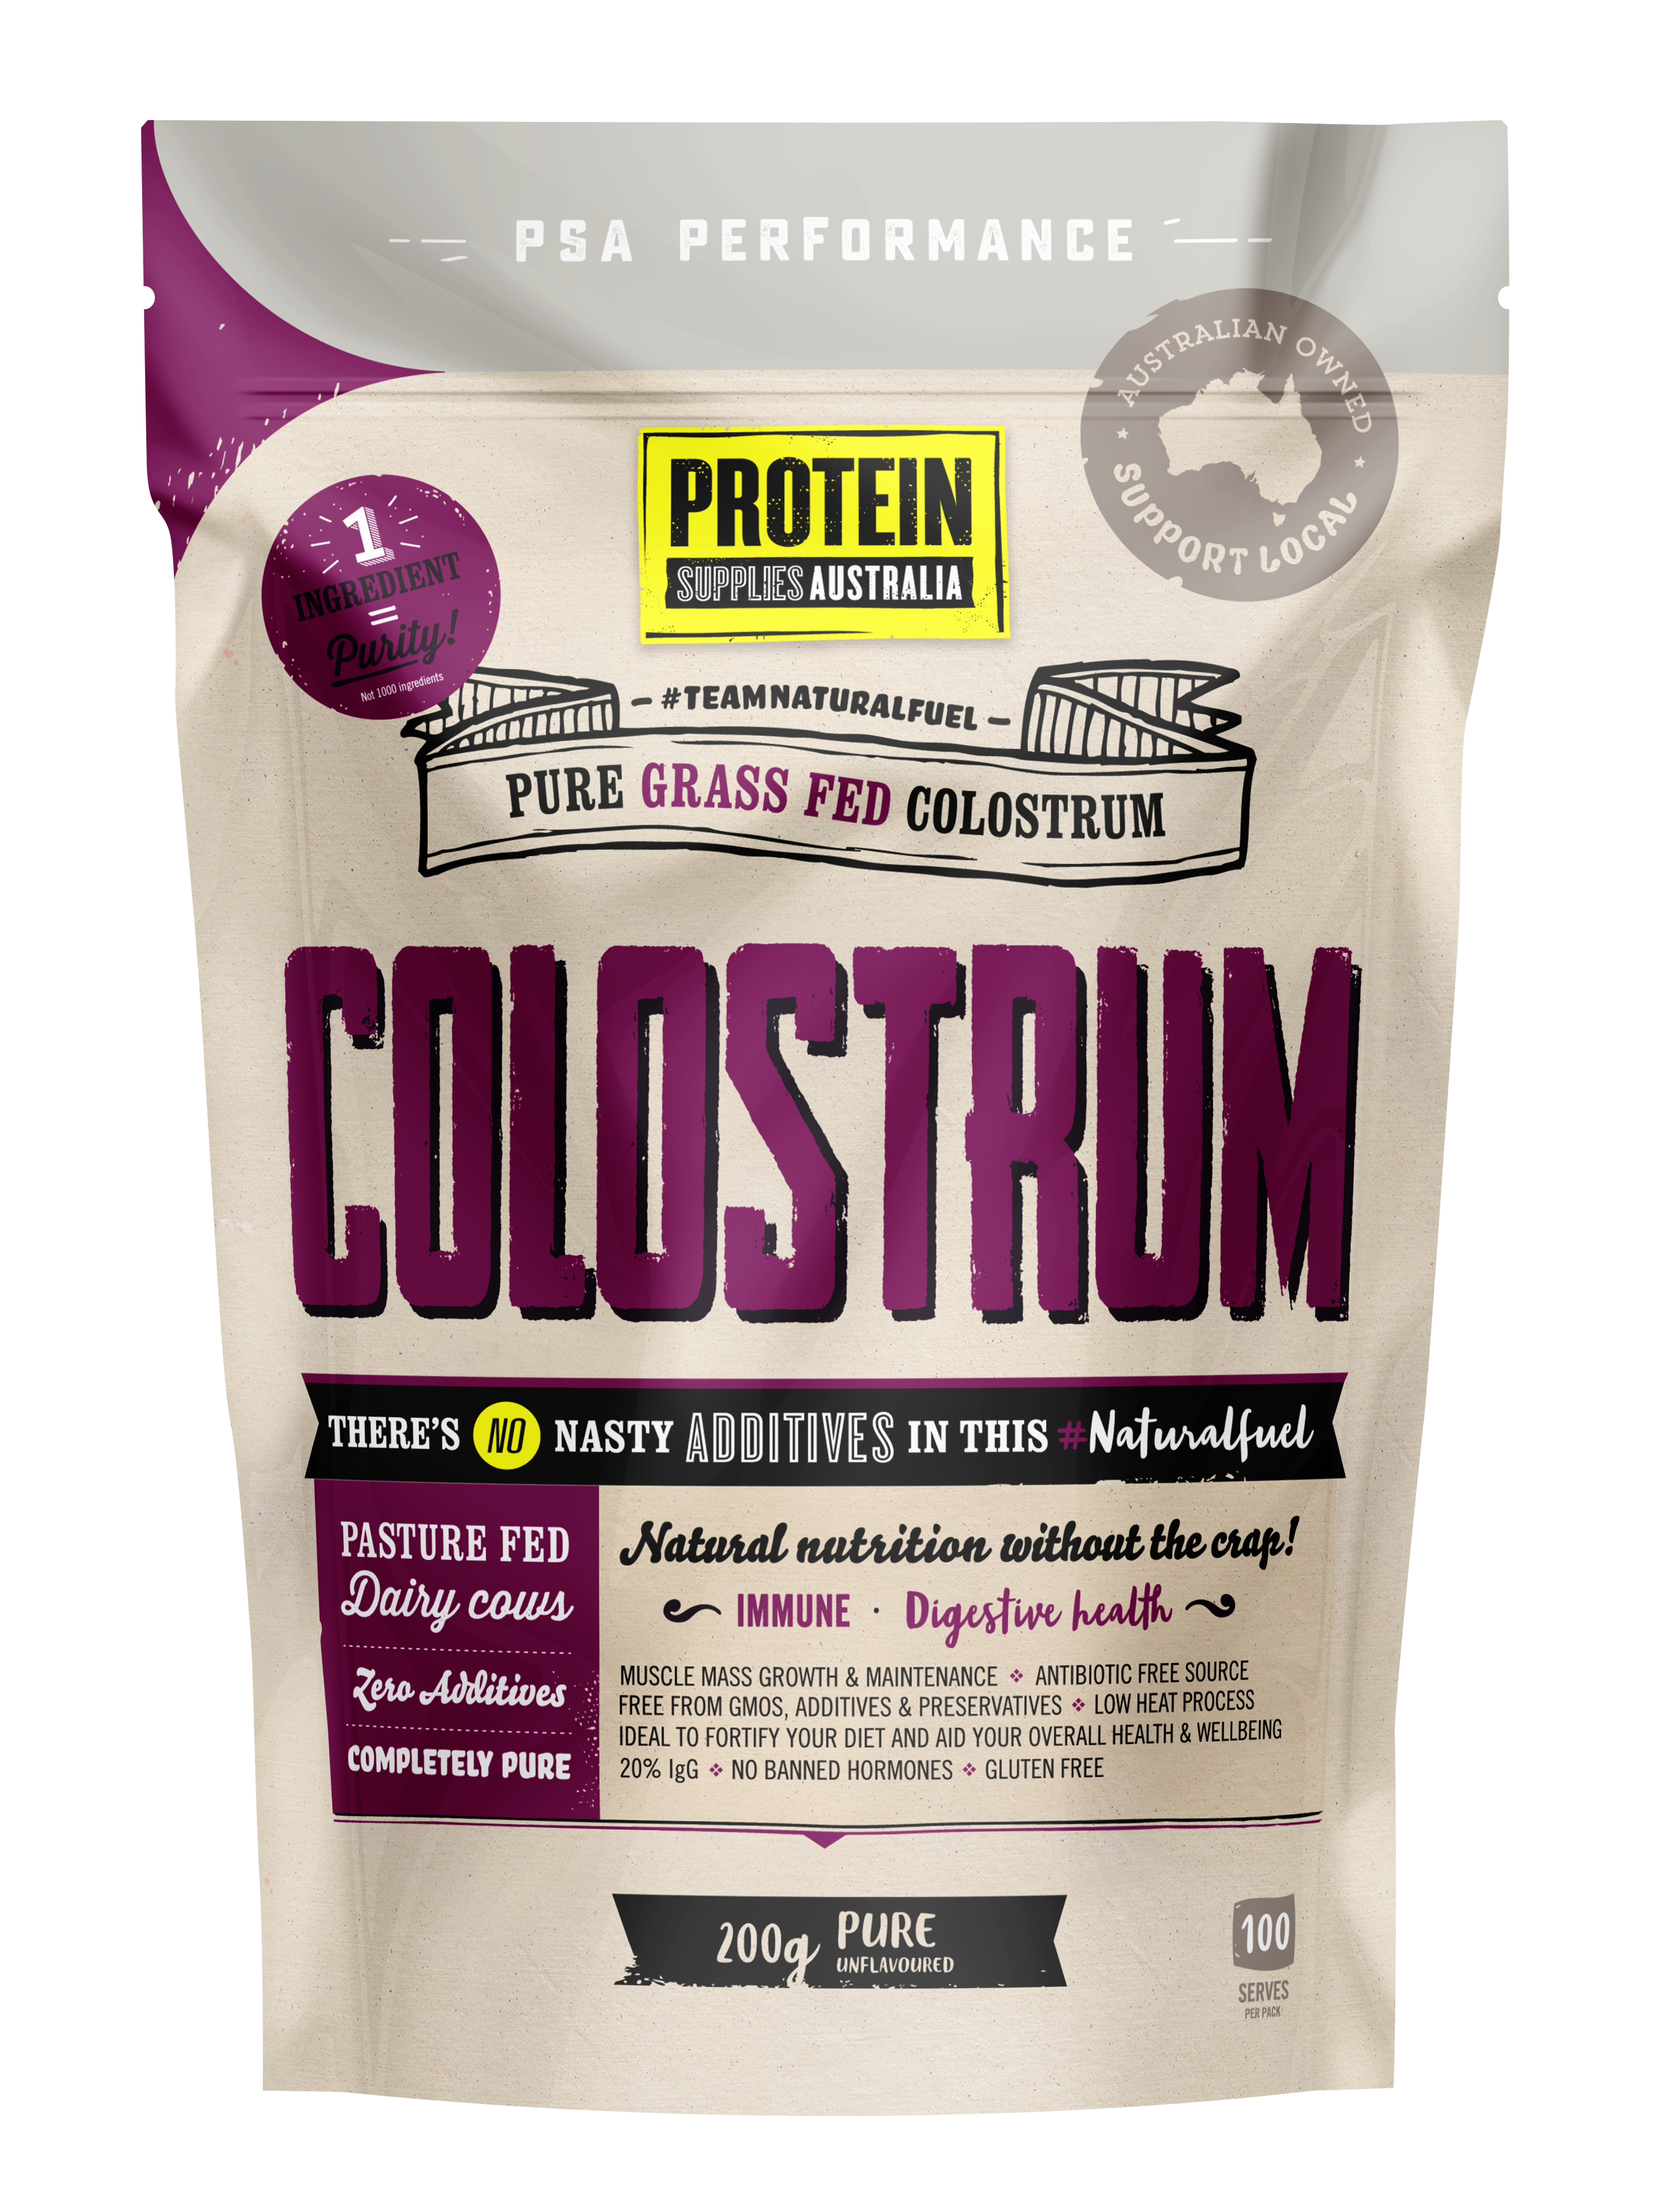 protein supplies aust. colostrum (grass fed) pure - 20% immunoglobulin (igg) 200g